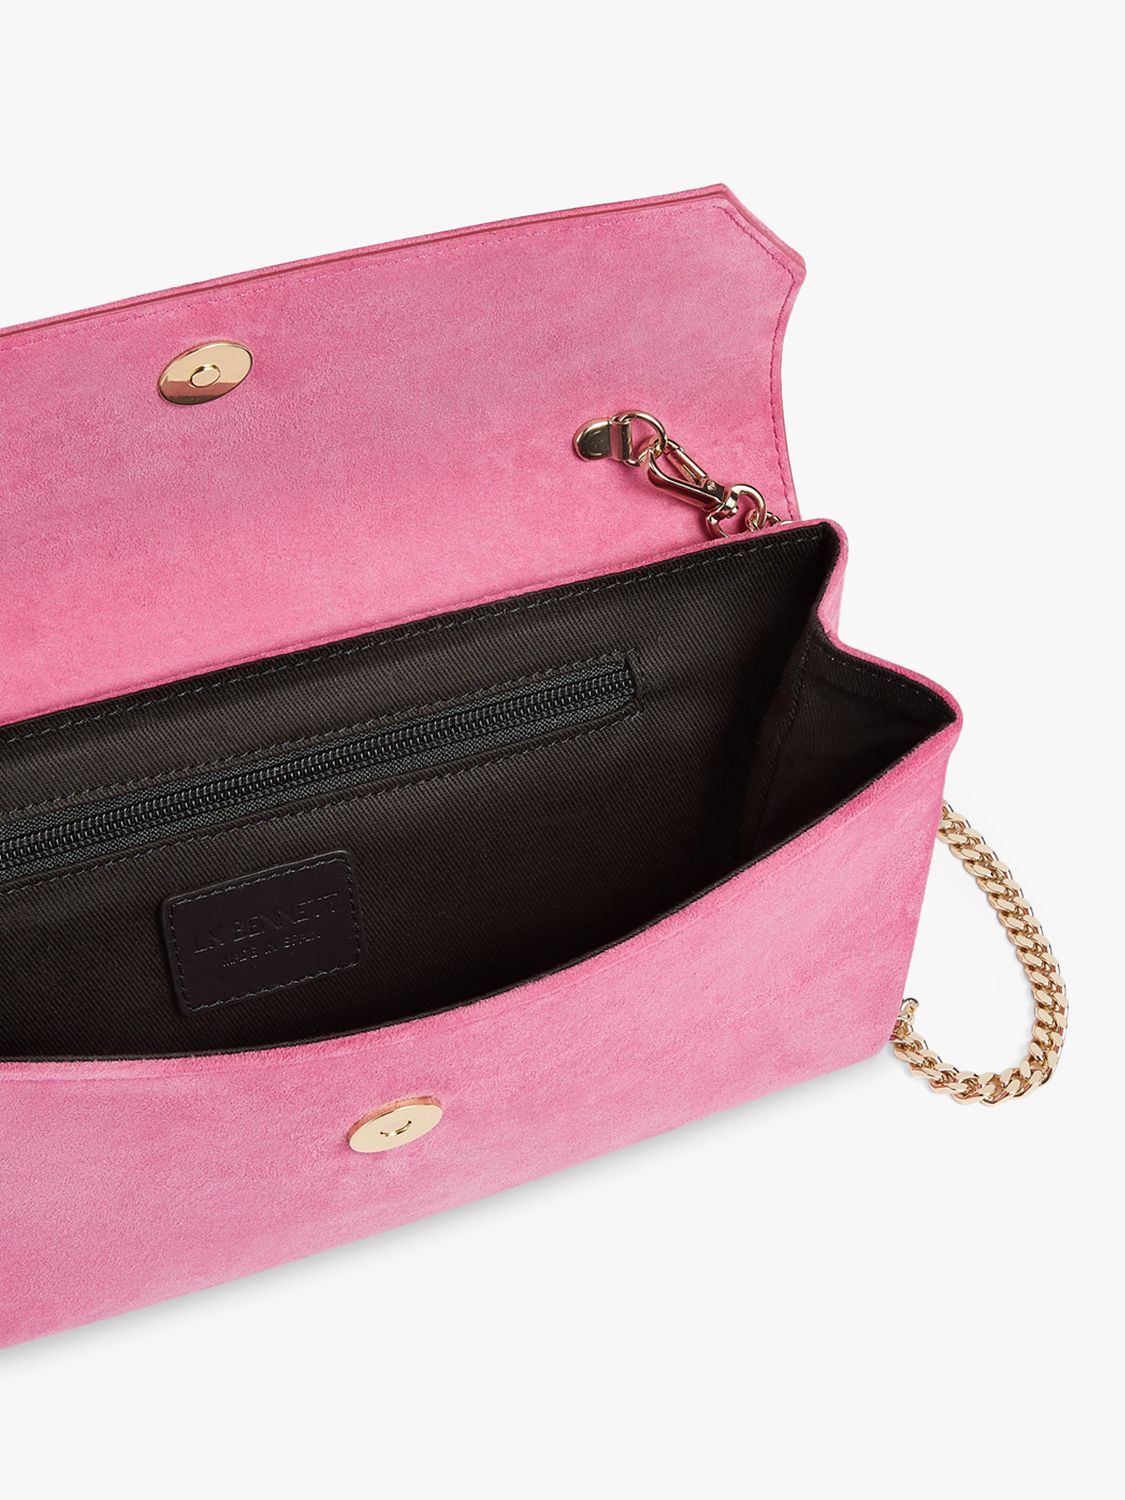 L.K.Bennett Dora Suede Envelope Clutch Bag, Pink